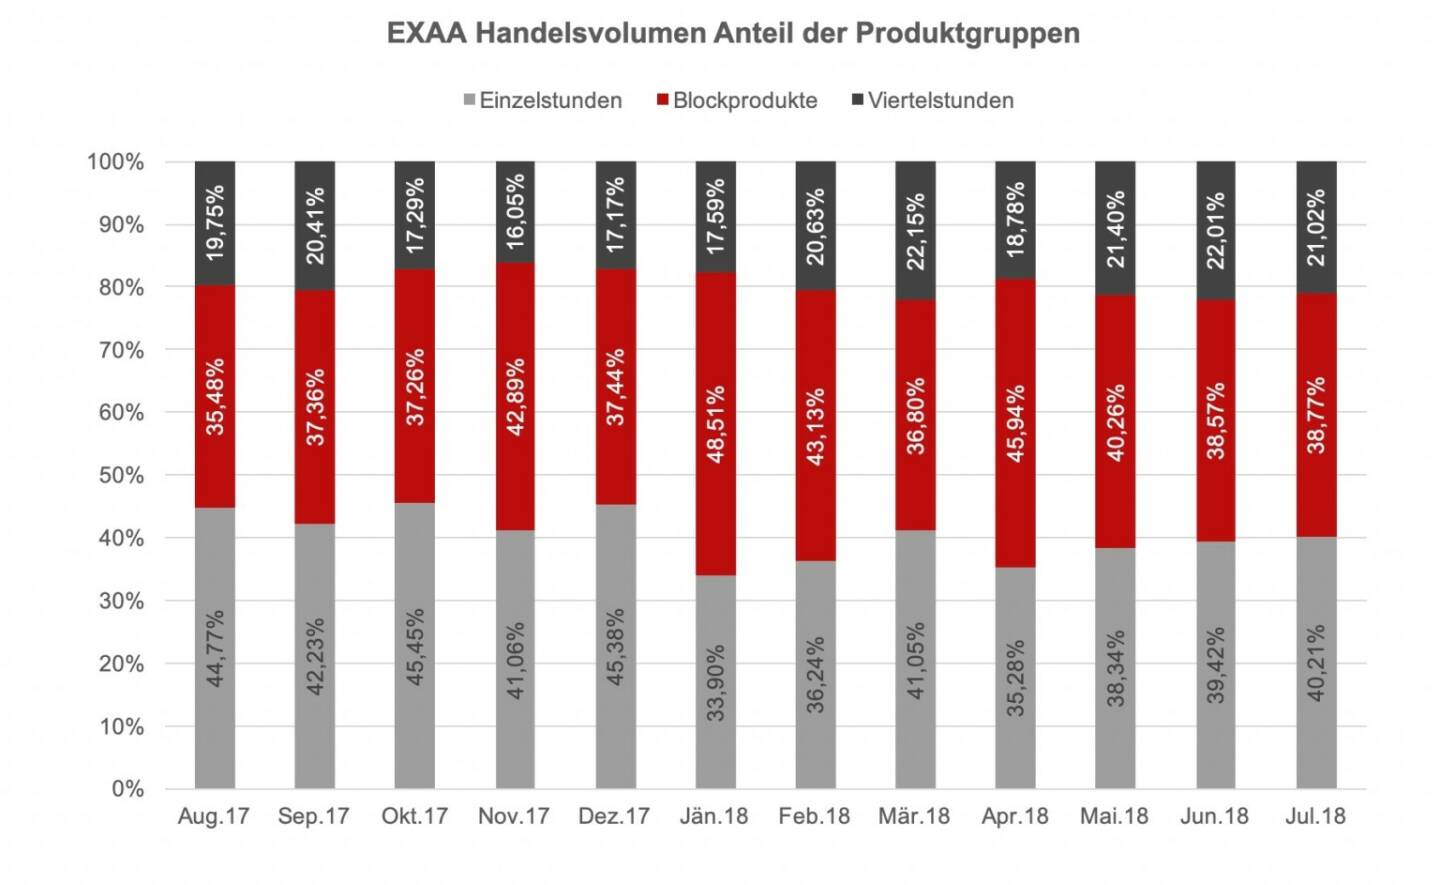 EXAA Handelsvolumen Anteil der Produktgruppen Juli 2018